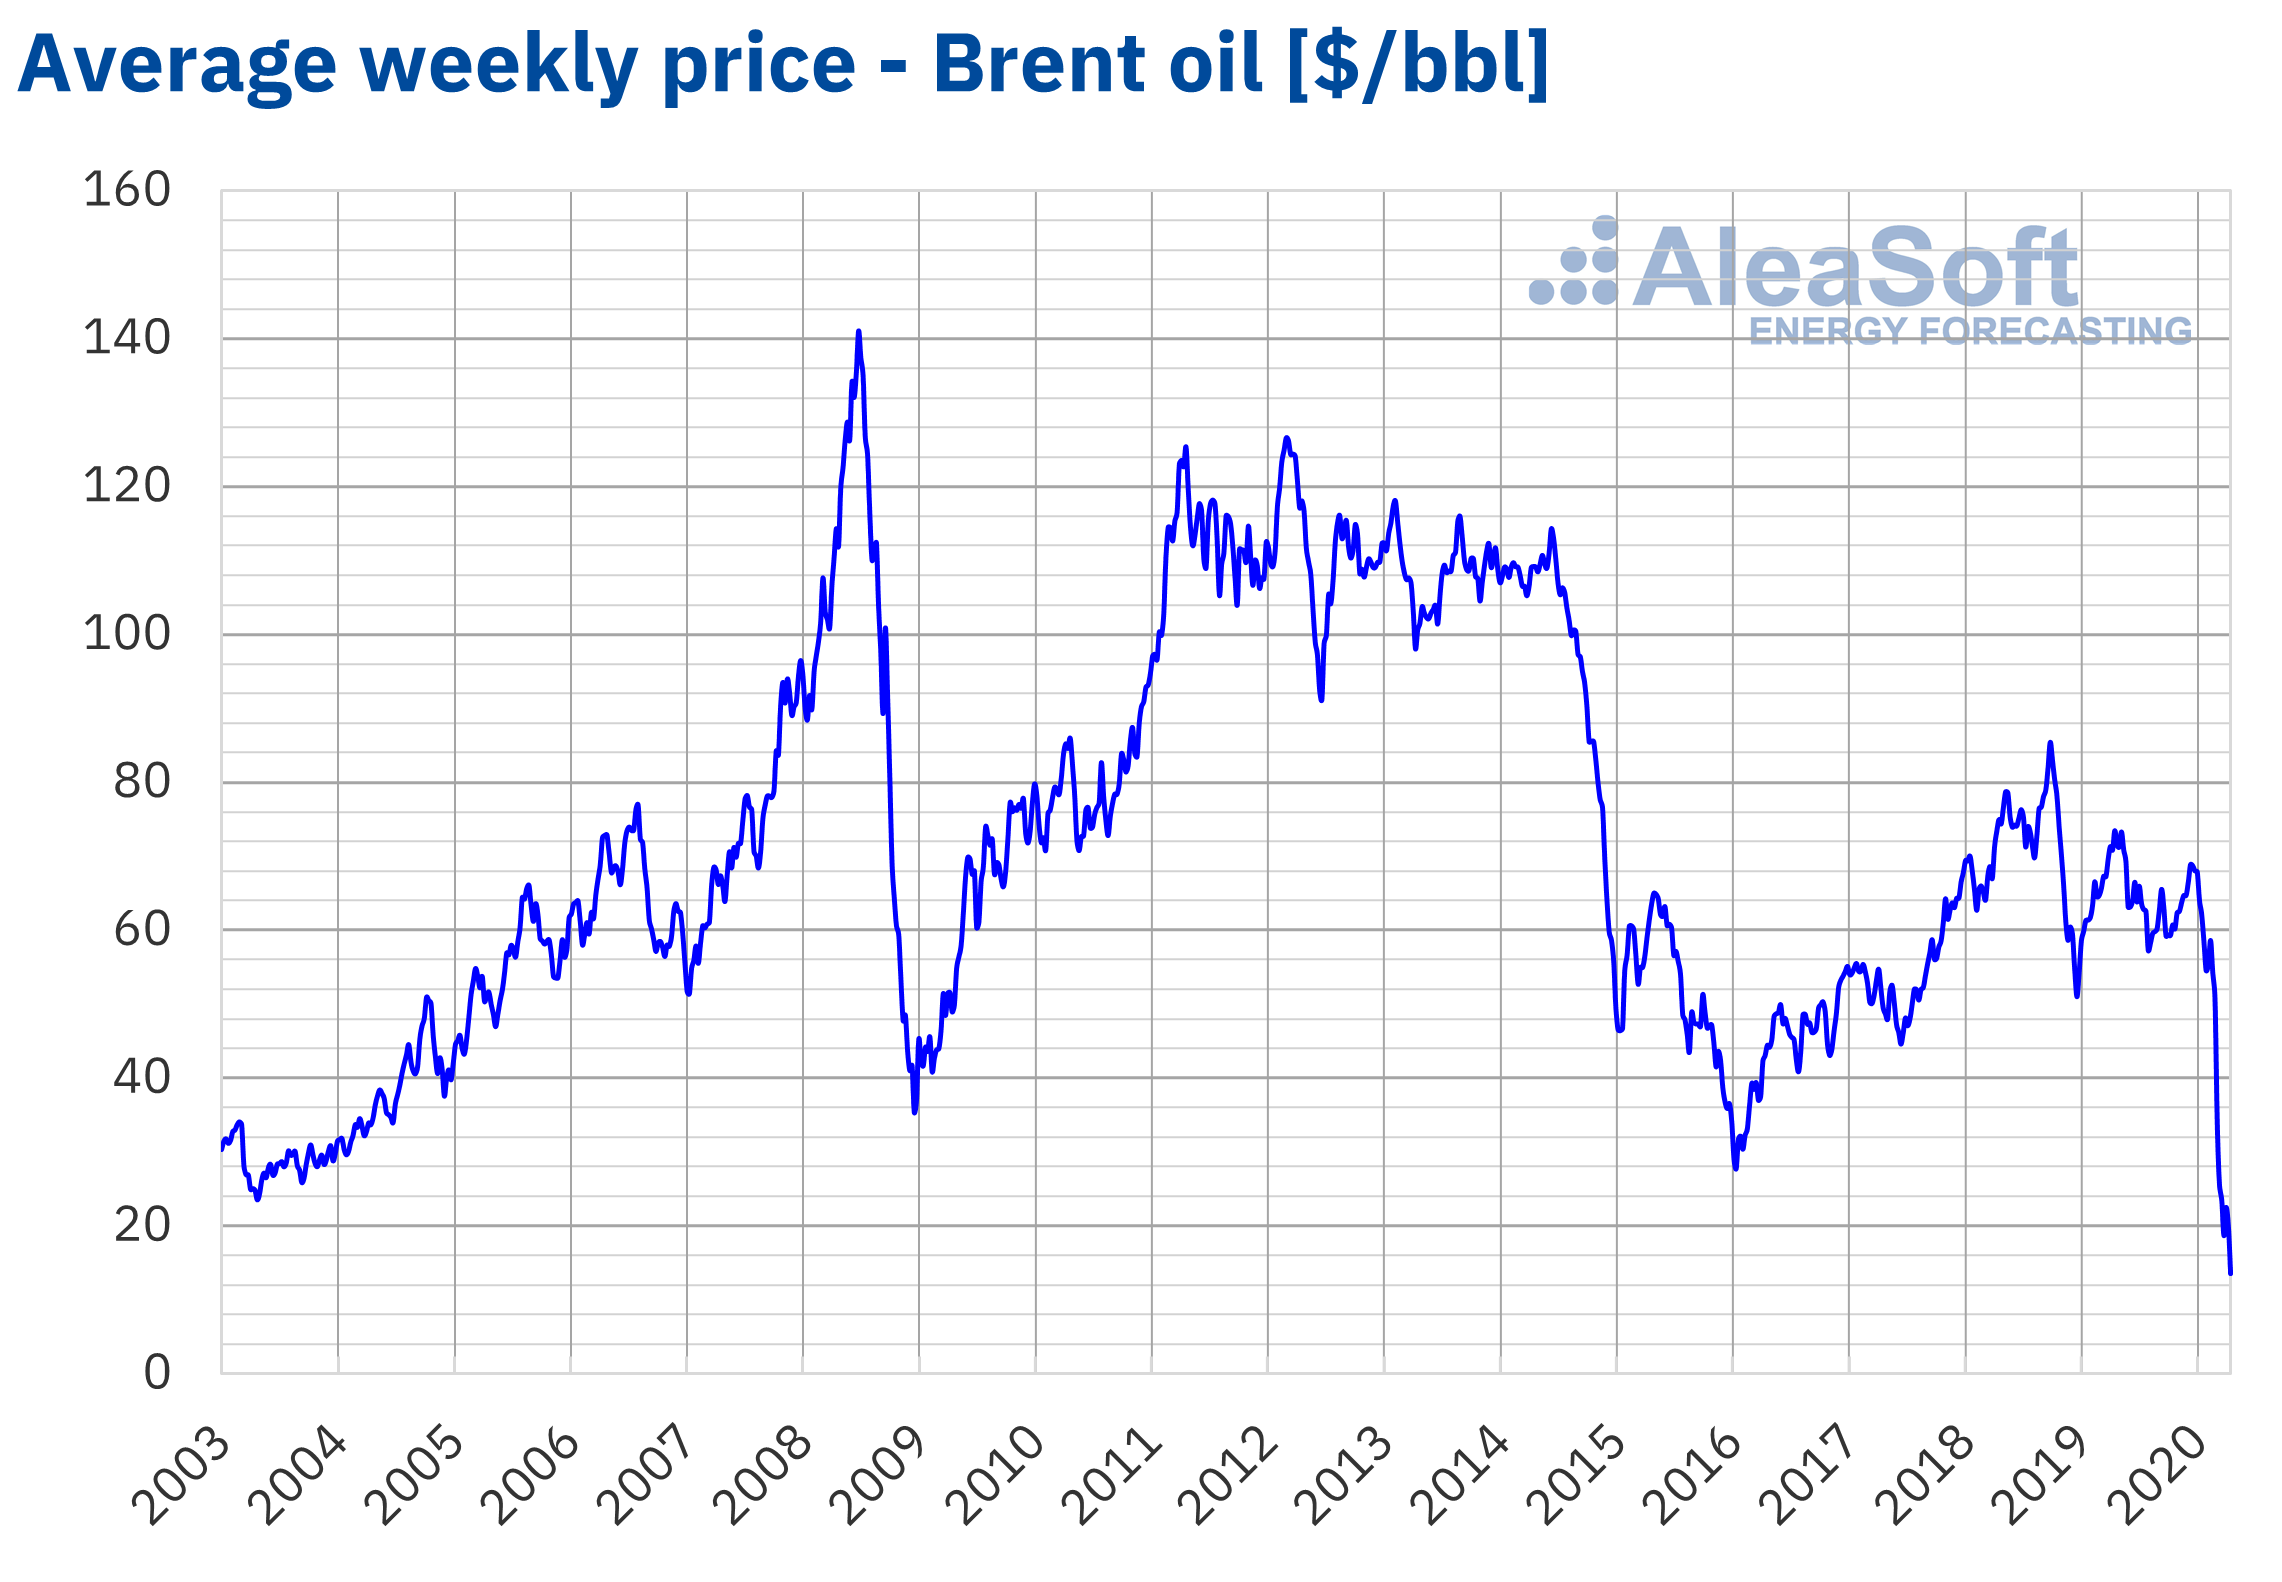 AleaSoft - Brent oil weekly price